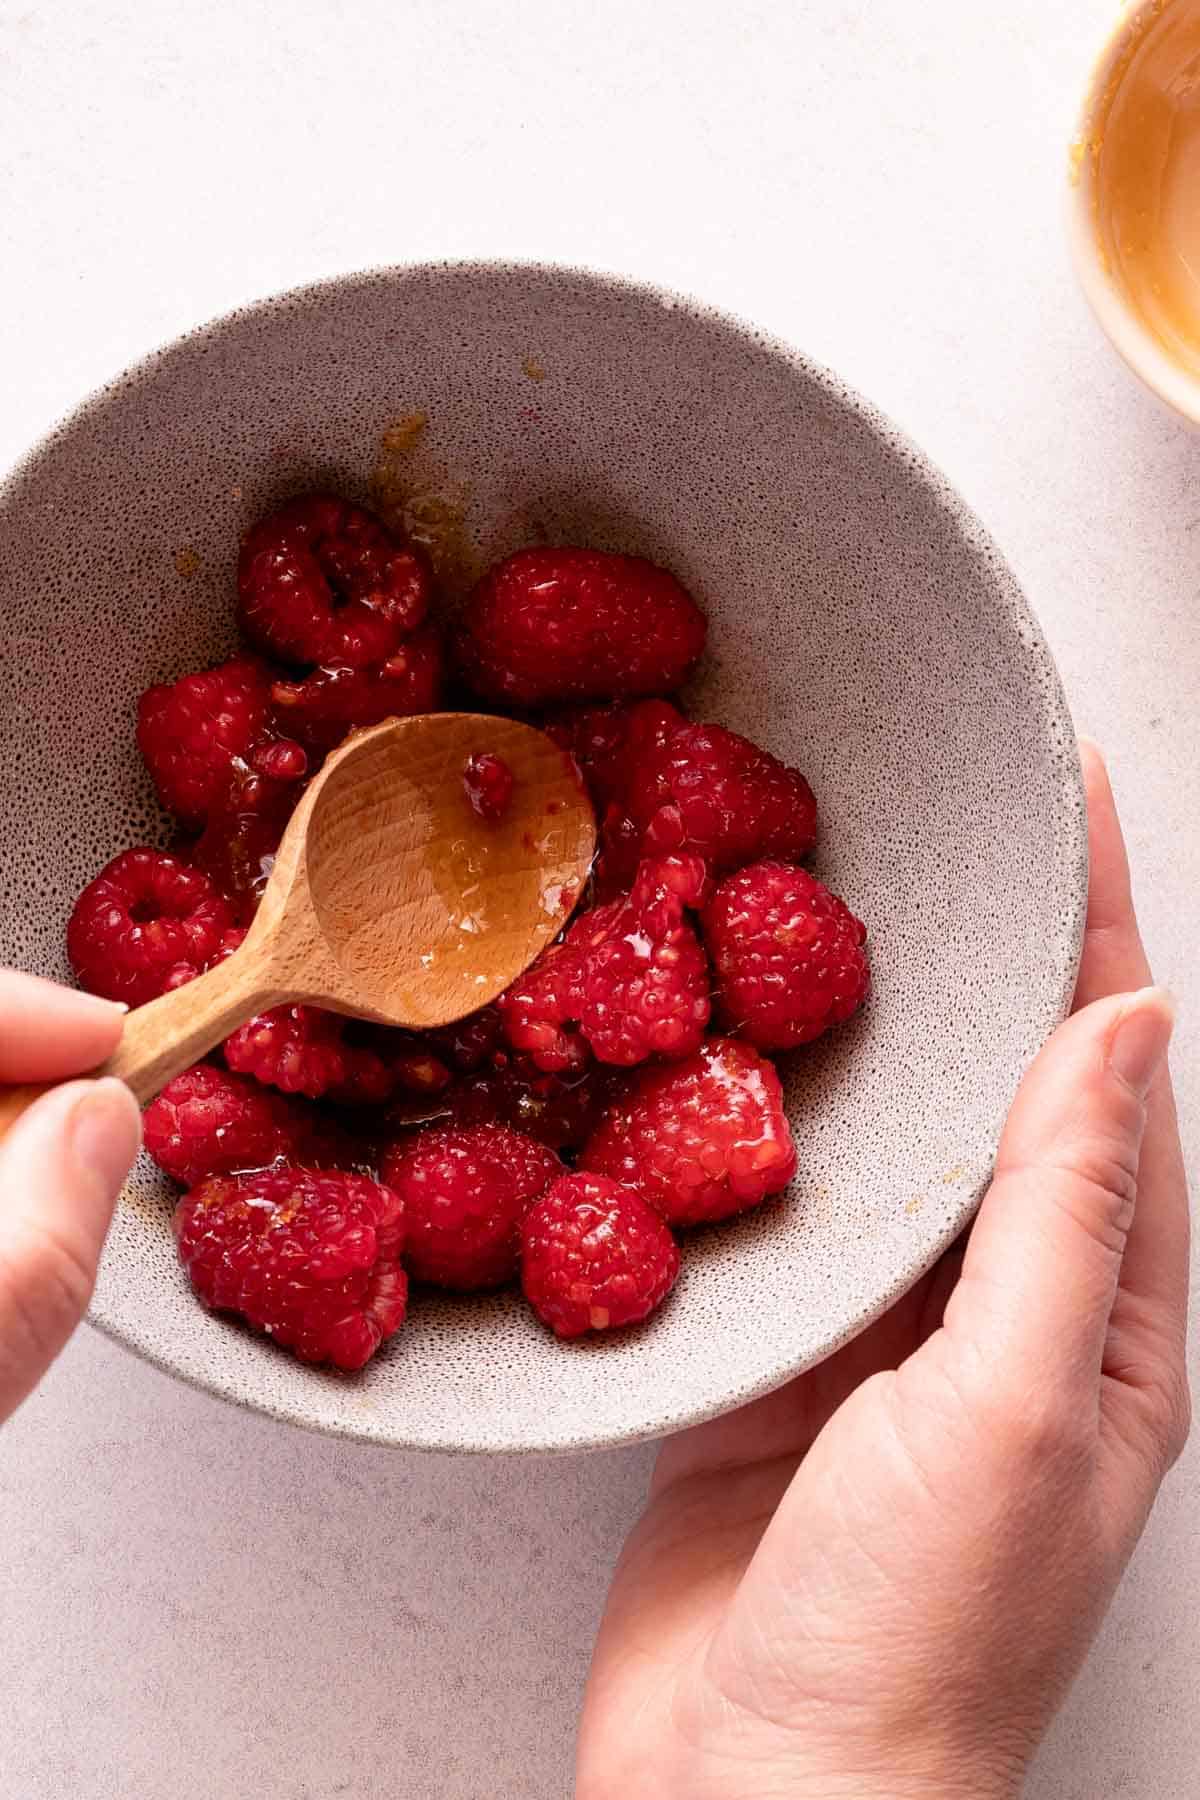 wooden spoon pressing down on raspberries in bowl